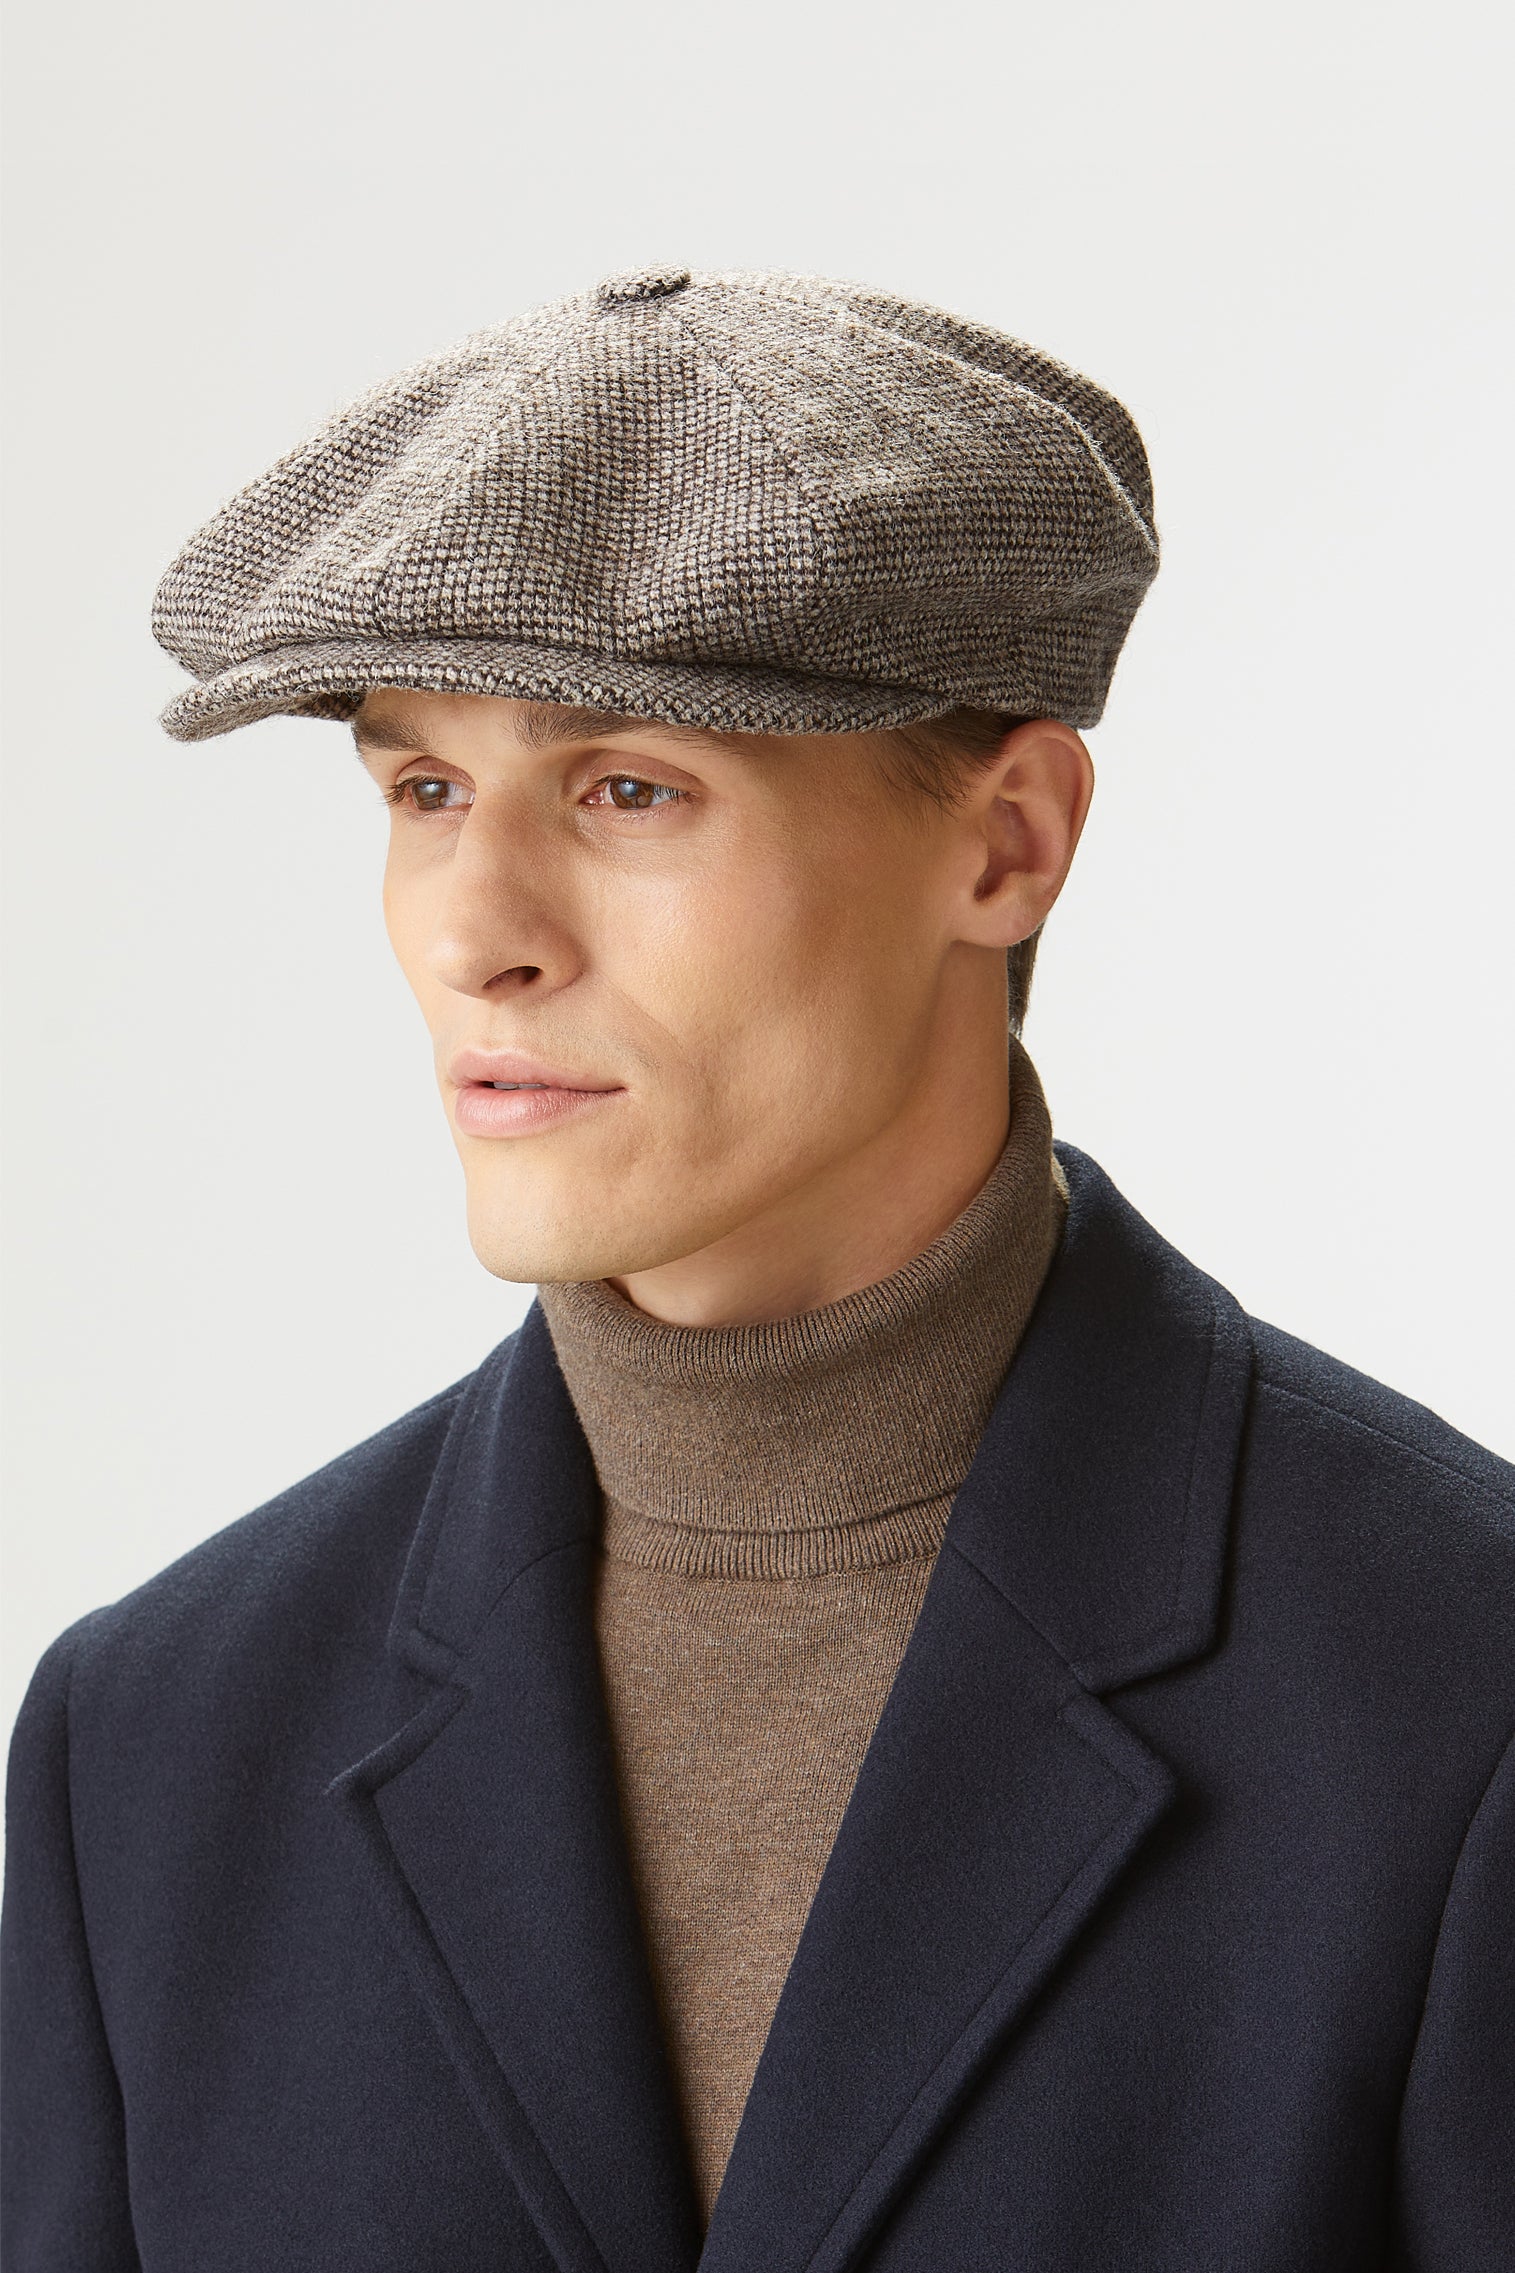 Muirfield Birdseye Bakerboy Cap - Hats for Oval Face Shapes - Lock & Co. Hatters London UK